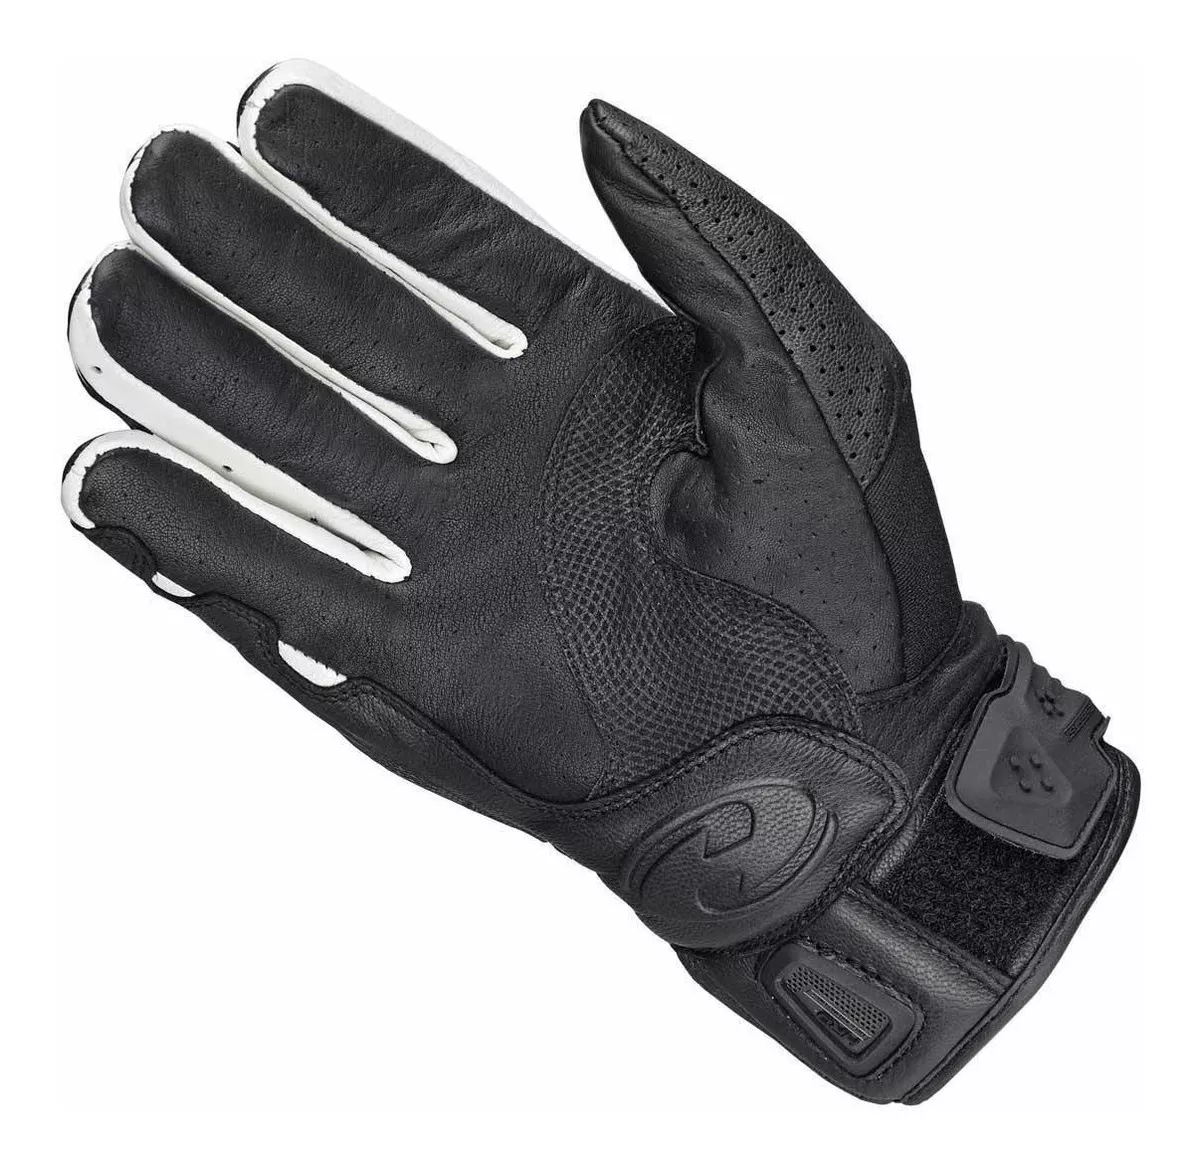 Primera imagen para búsqueda de guantes held